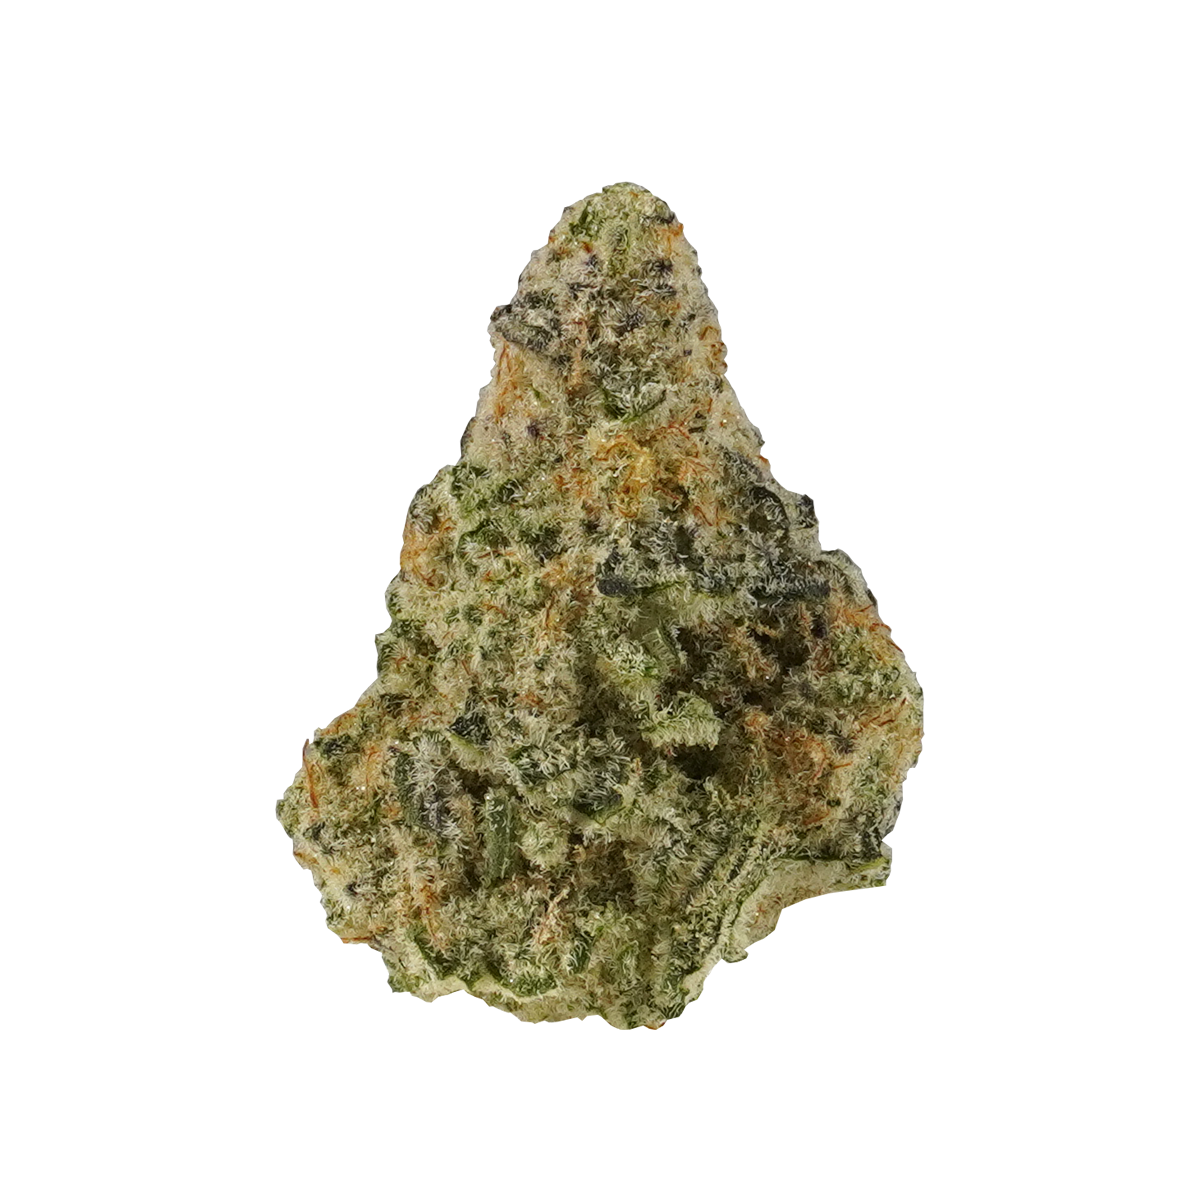 MAC cannabis strain